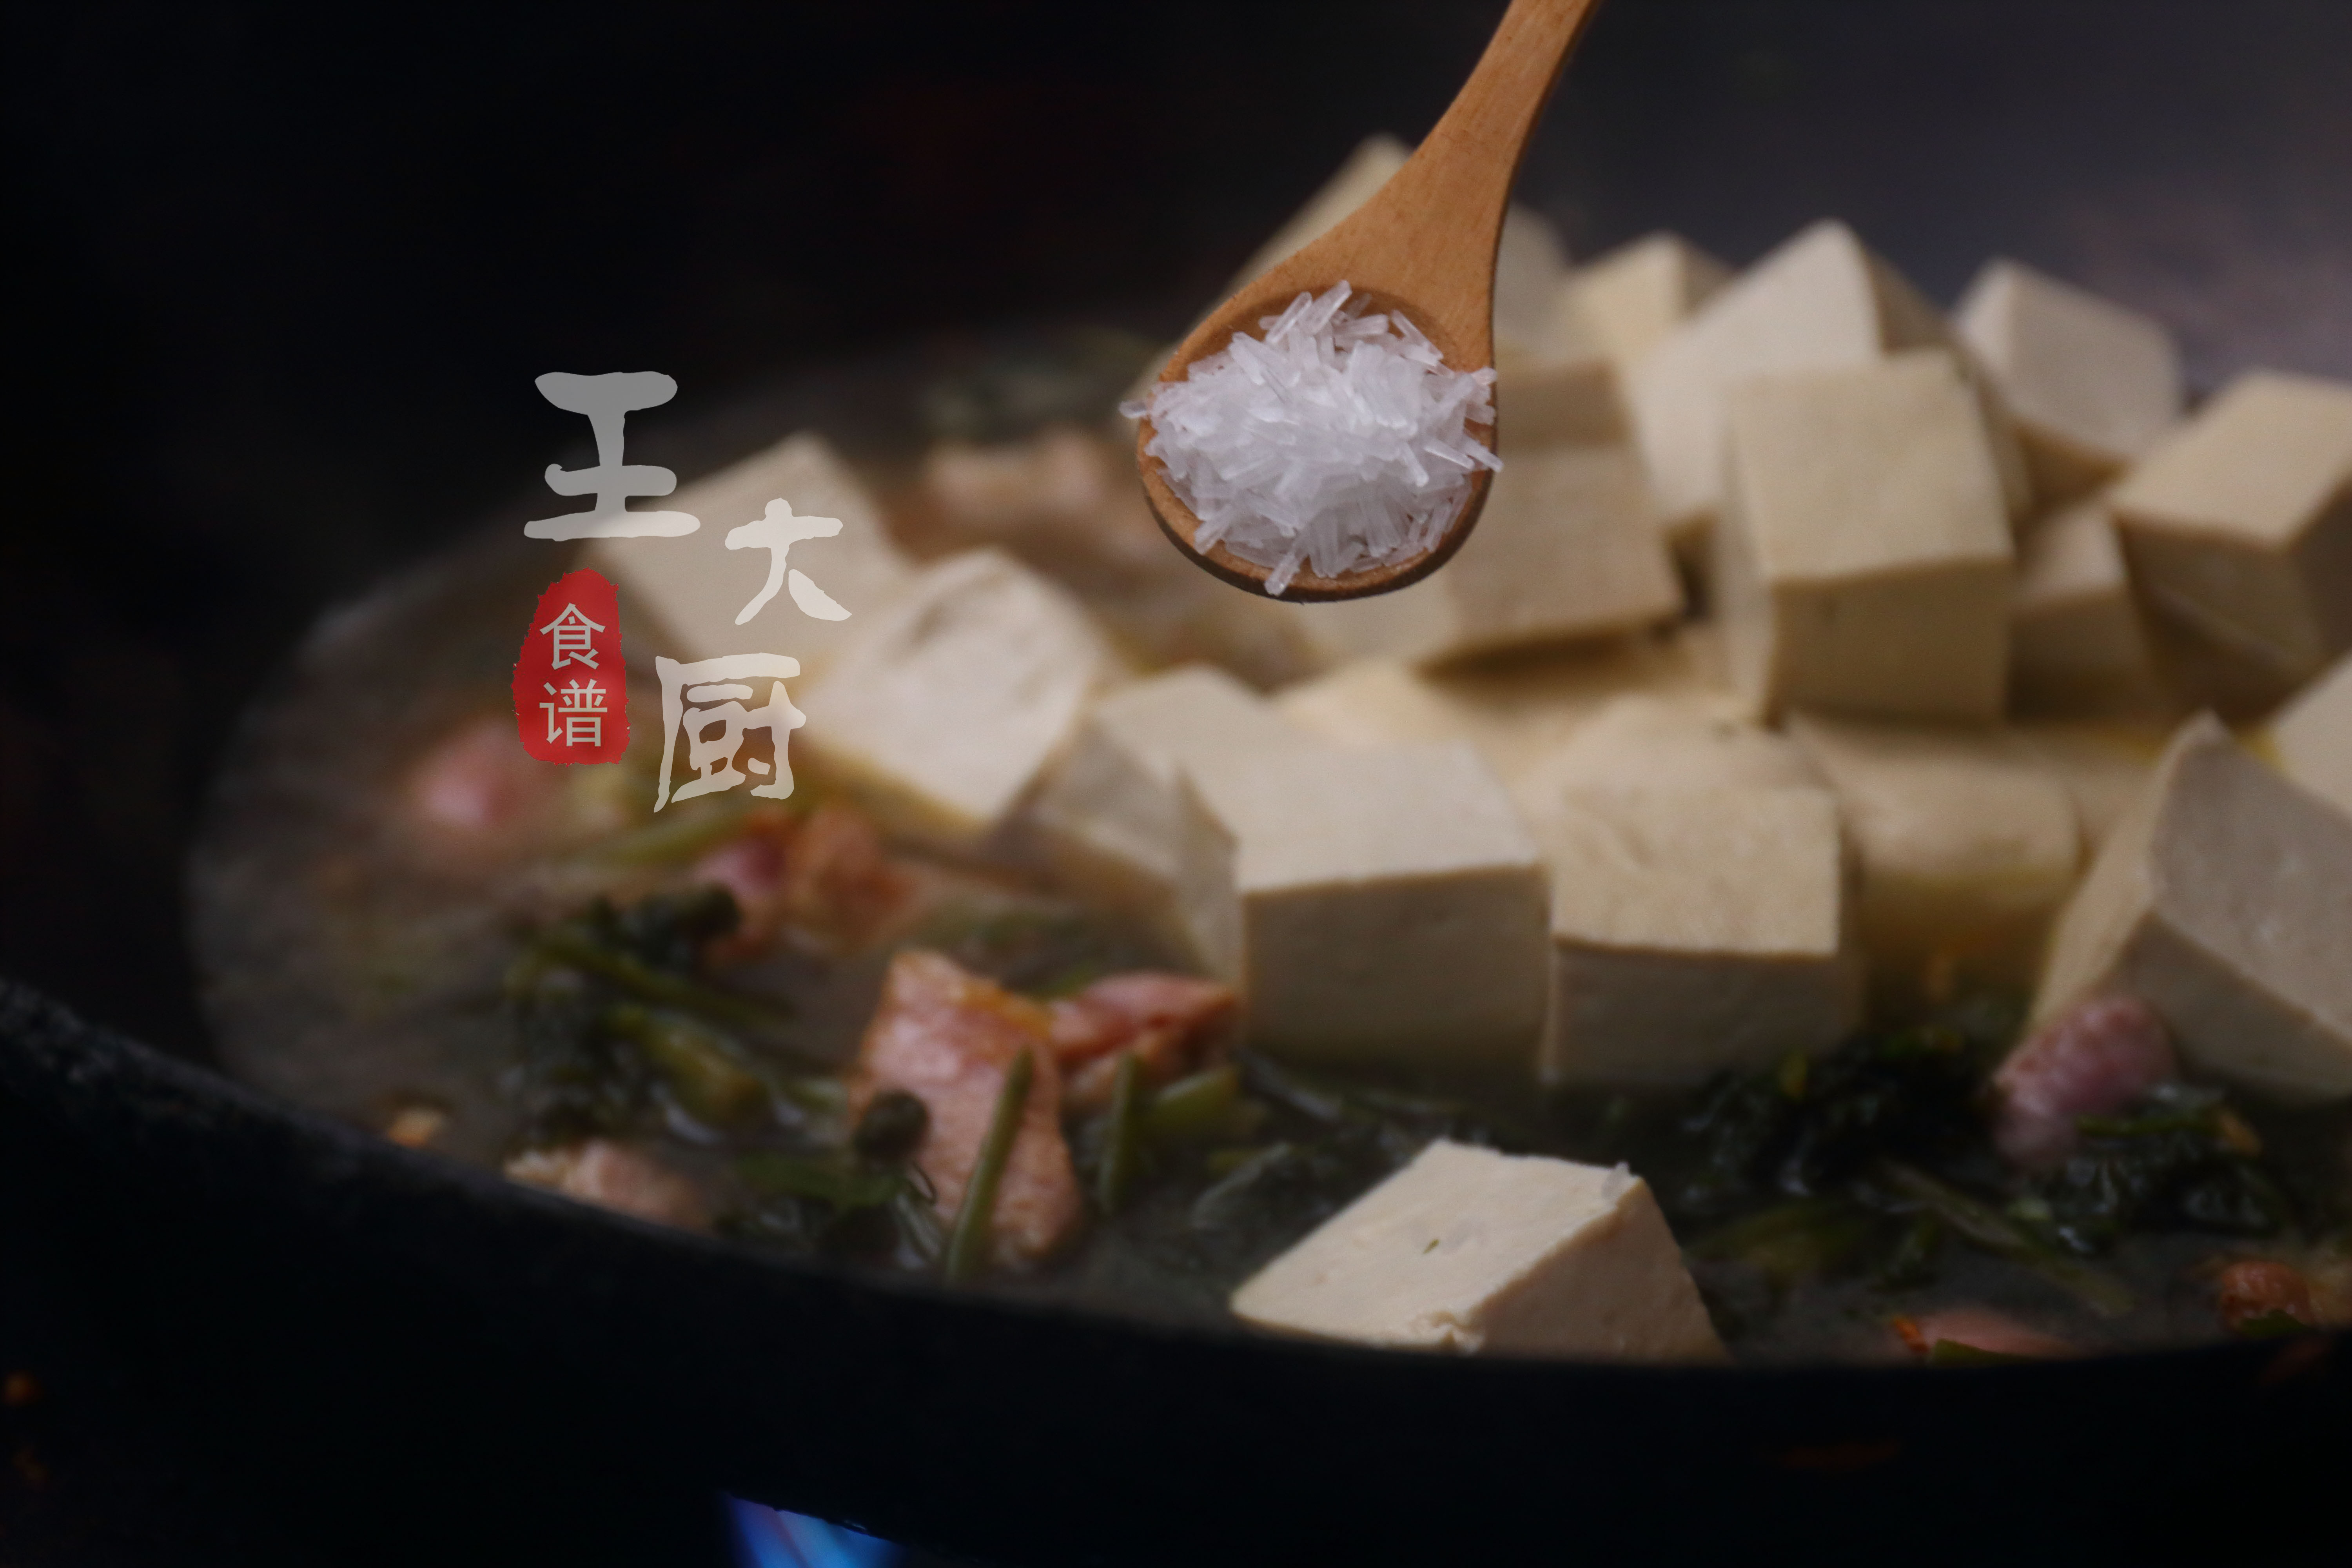 雪里红炖豆腐,雪里红炖豆腐怎么炖好吃窍门